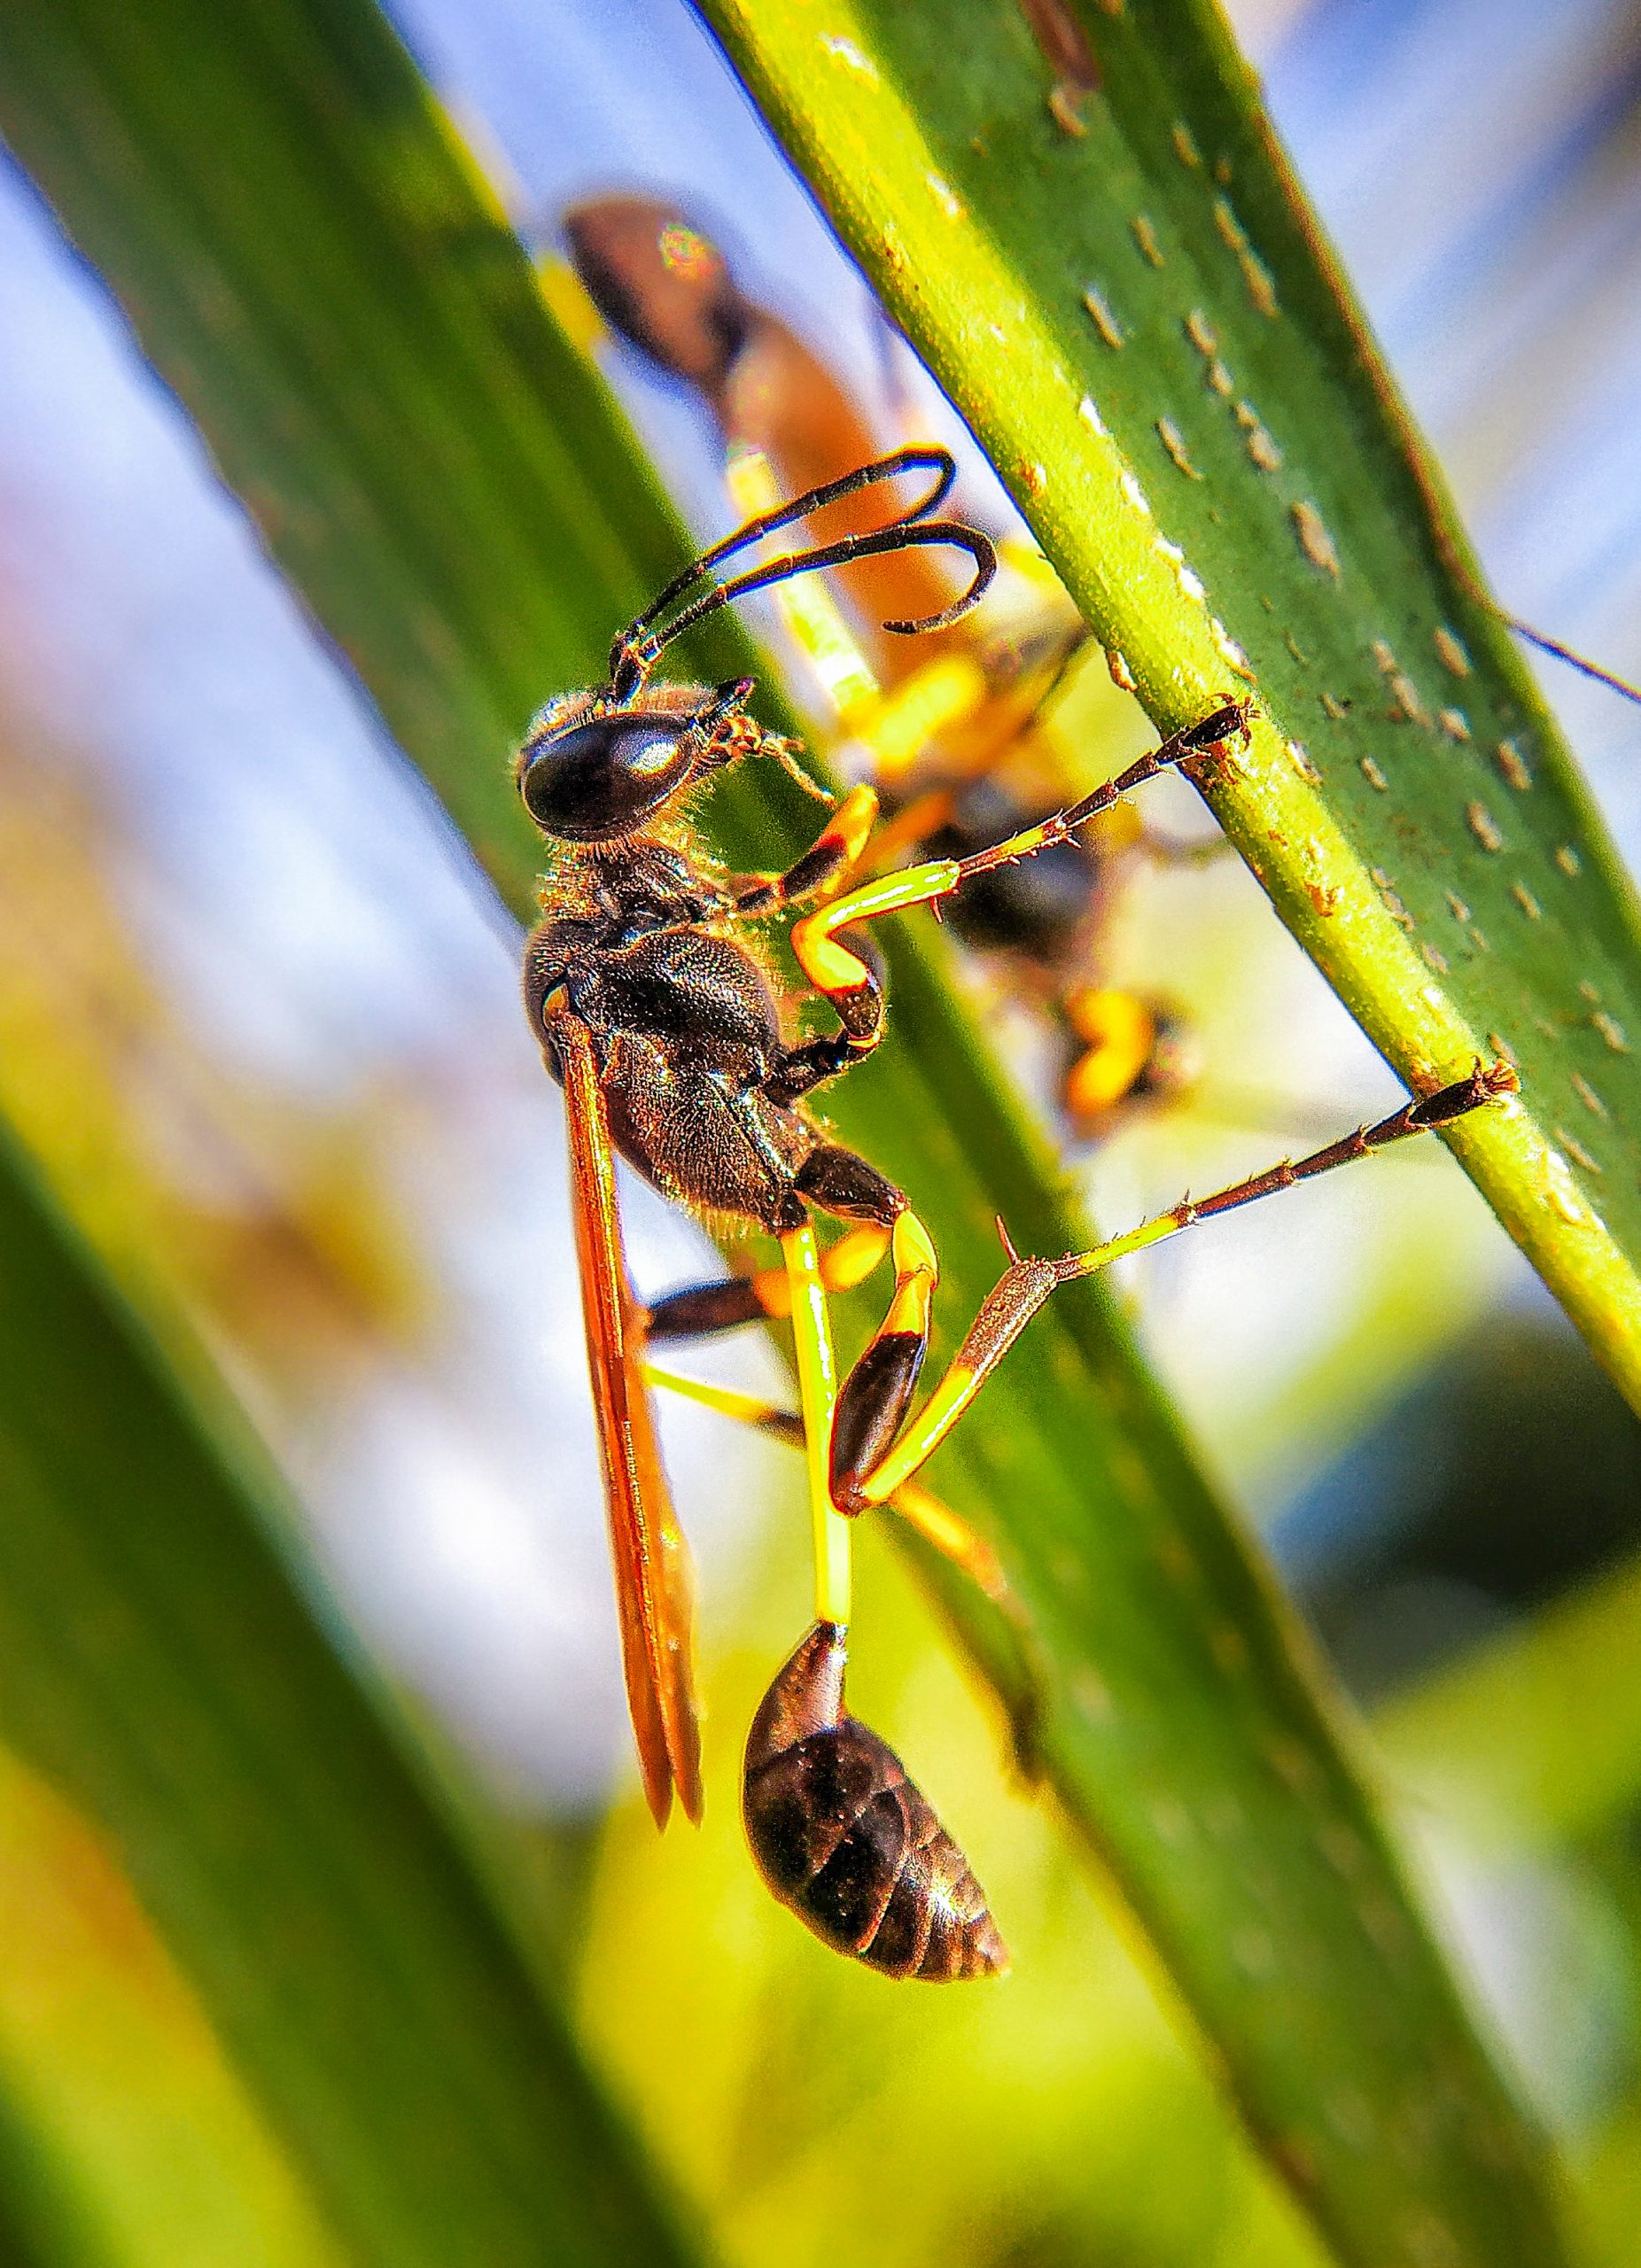 Macro shot of Mud dauber wasp sitting on leaf